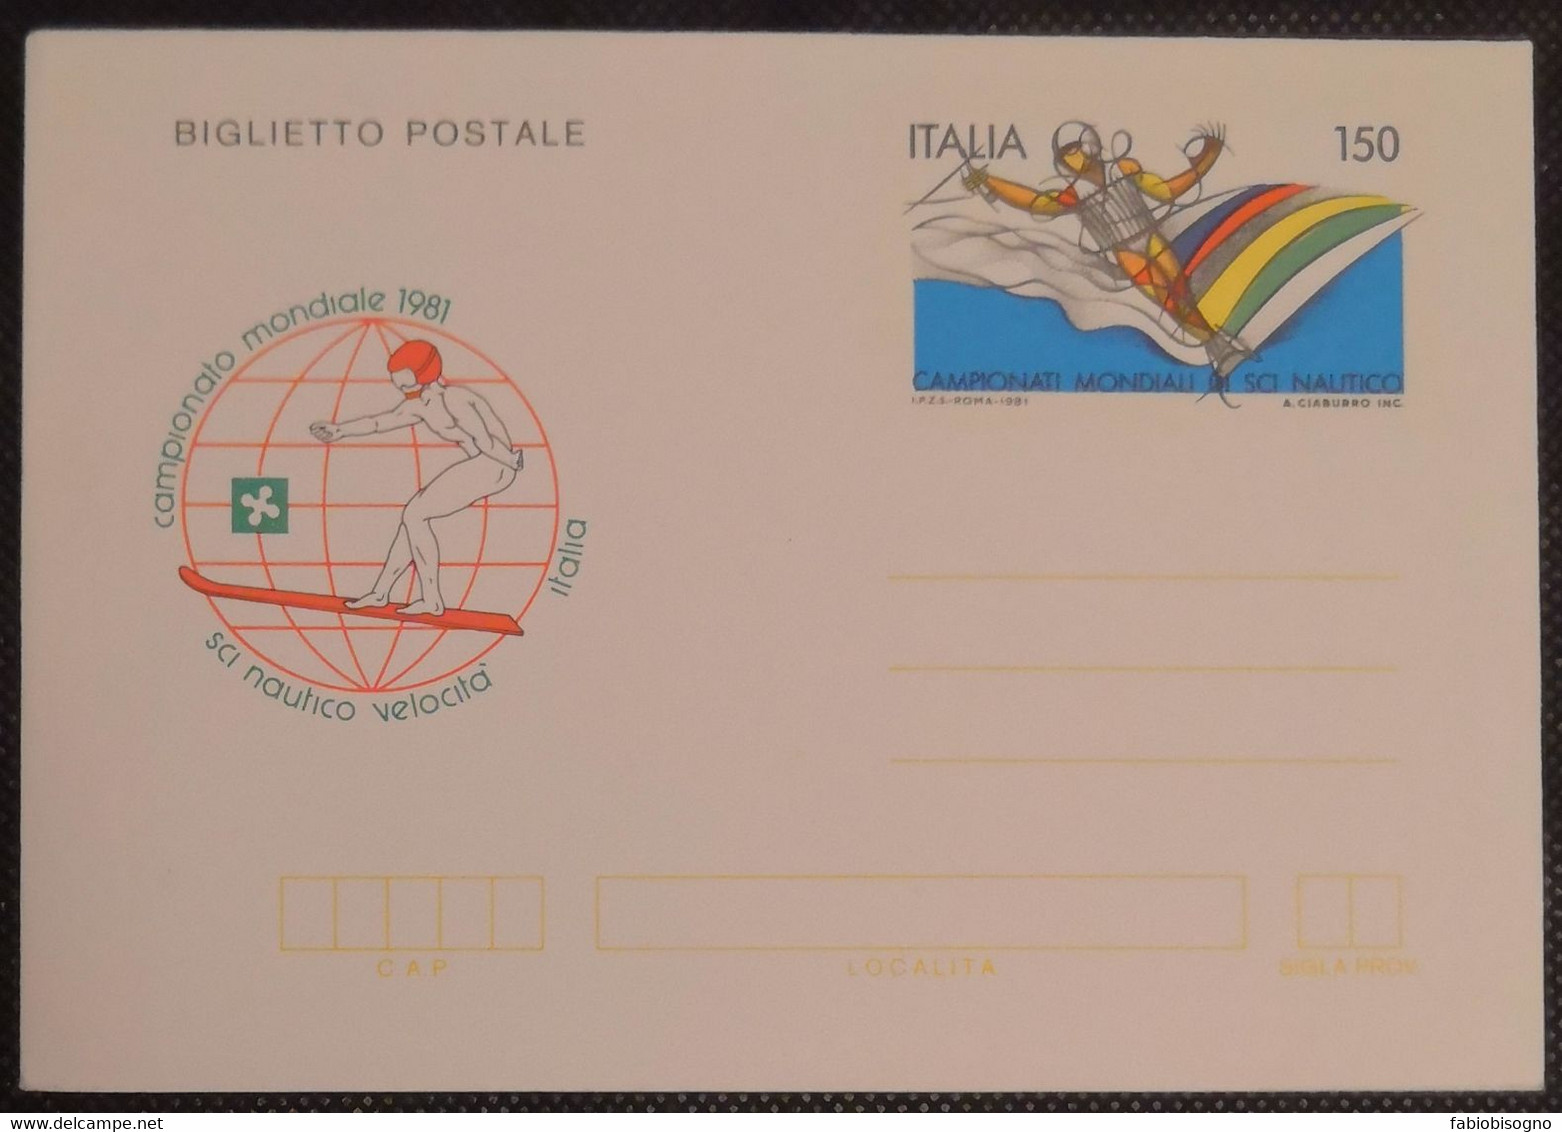 1981 Italia L.150 - Campionato Mondiale Sci Nautico Velocità - Postal Cover - Ski Nautique